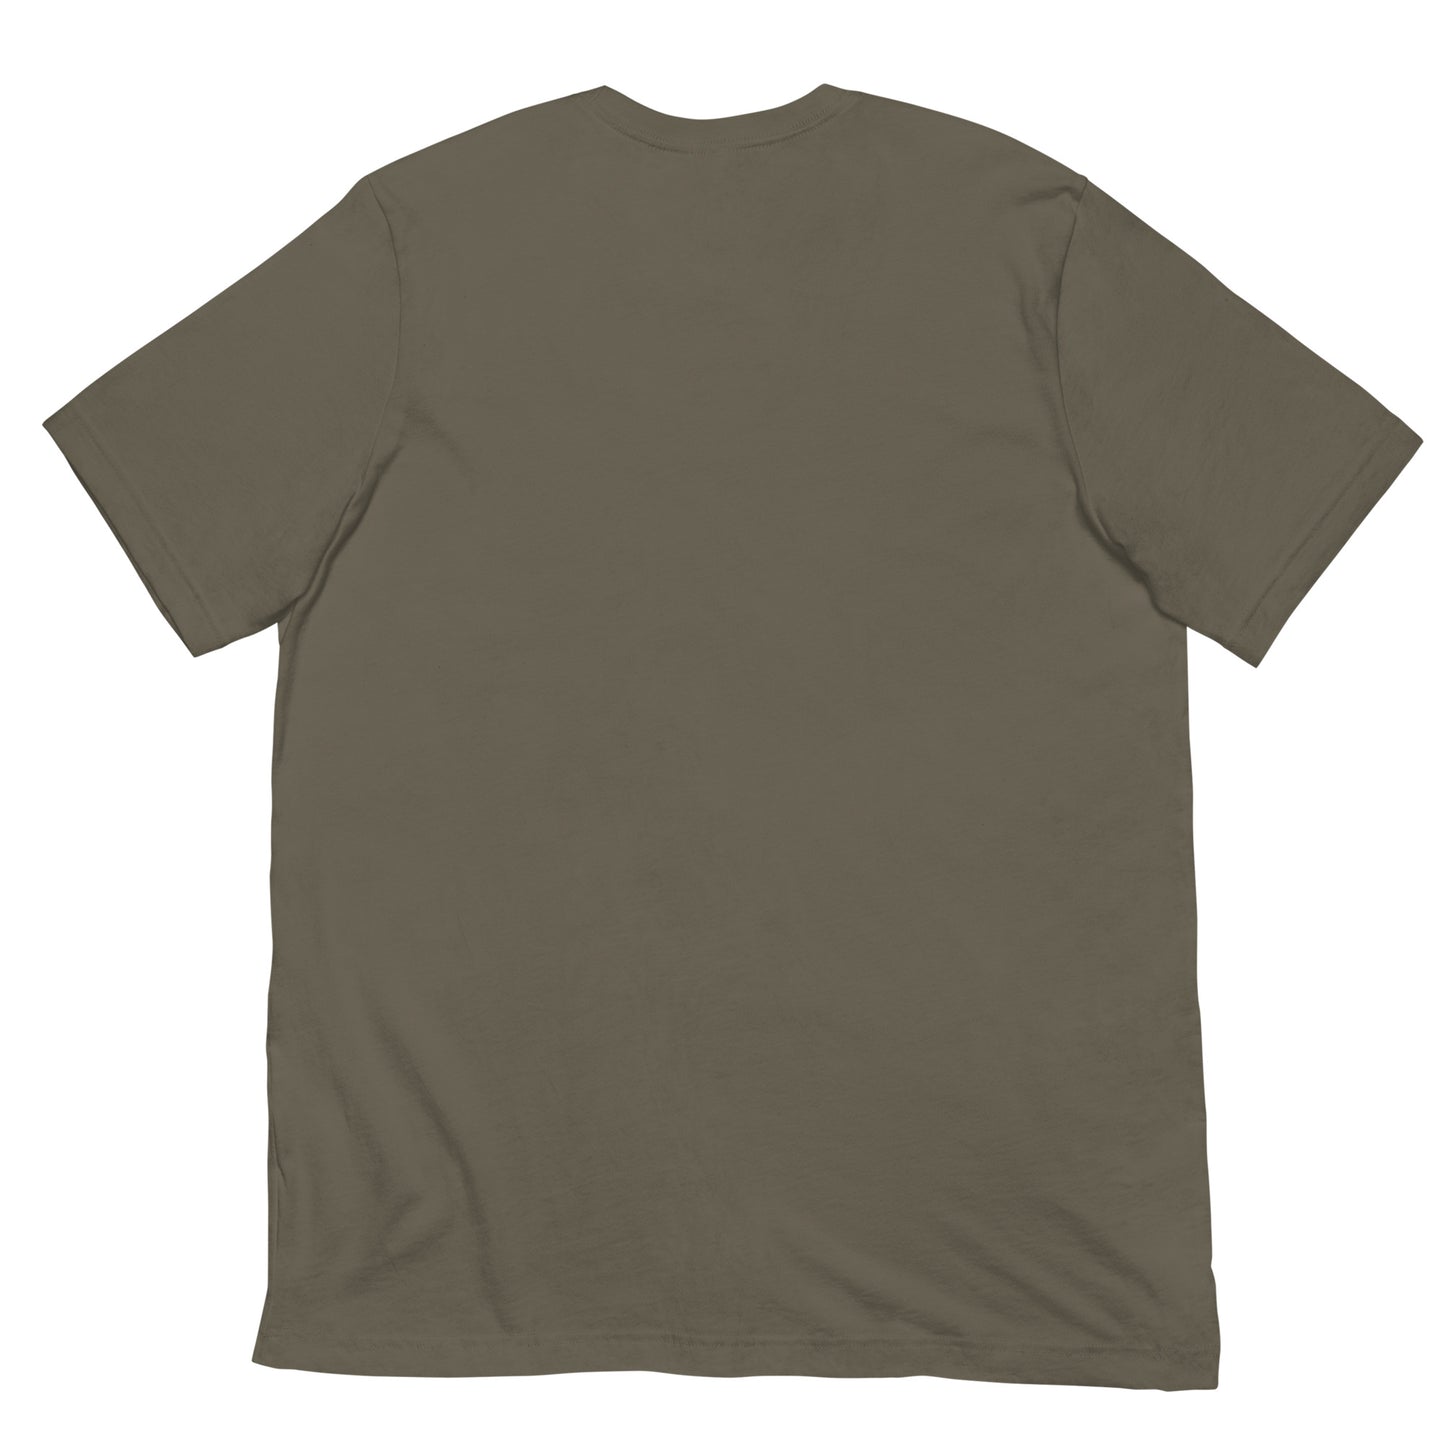 Artisanal - Unisex t-shirt